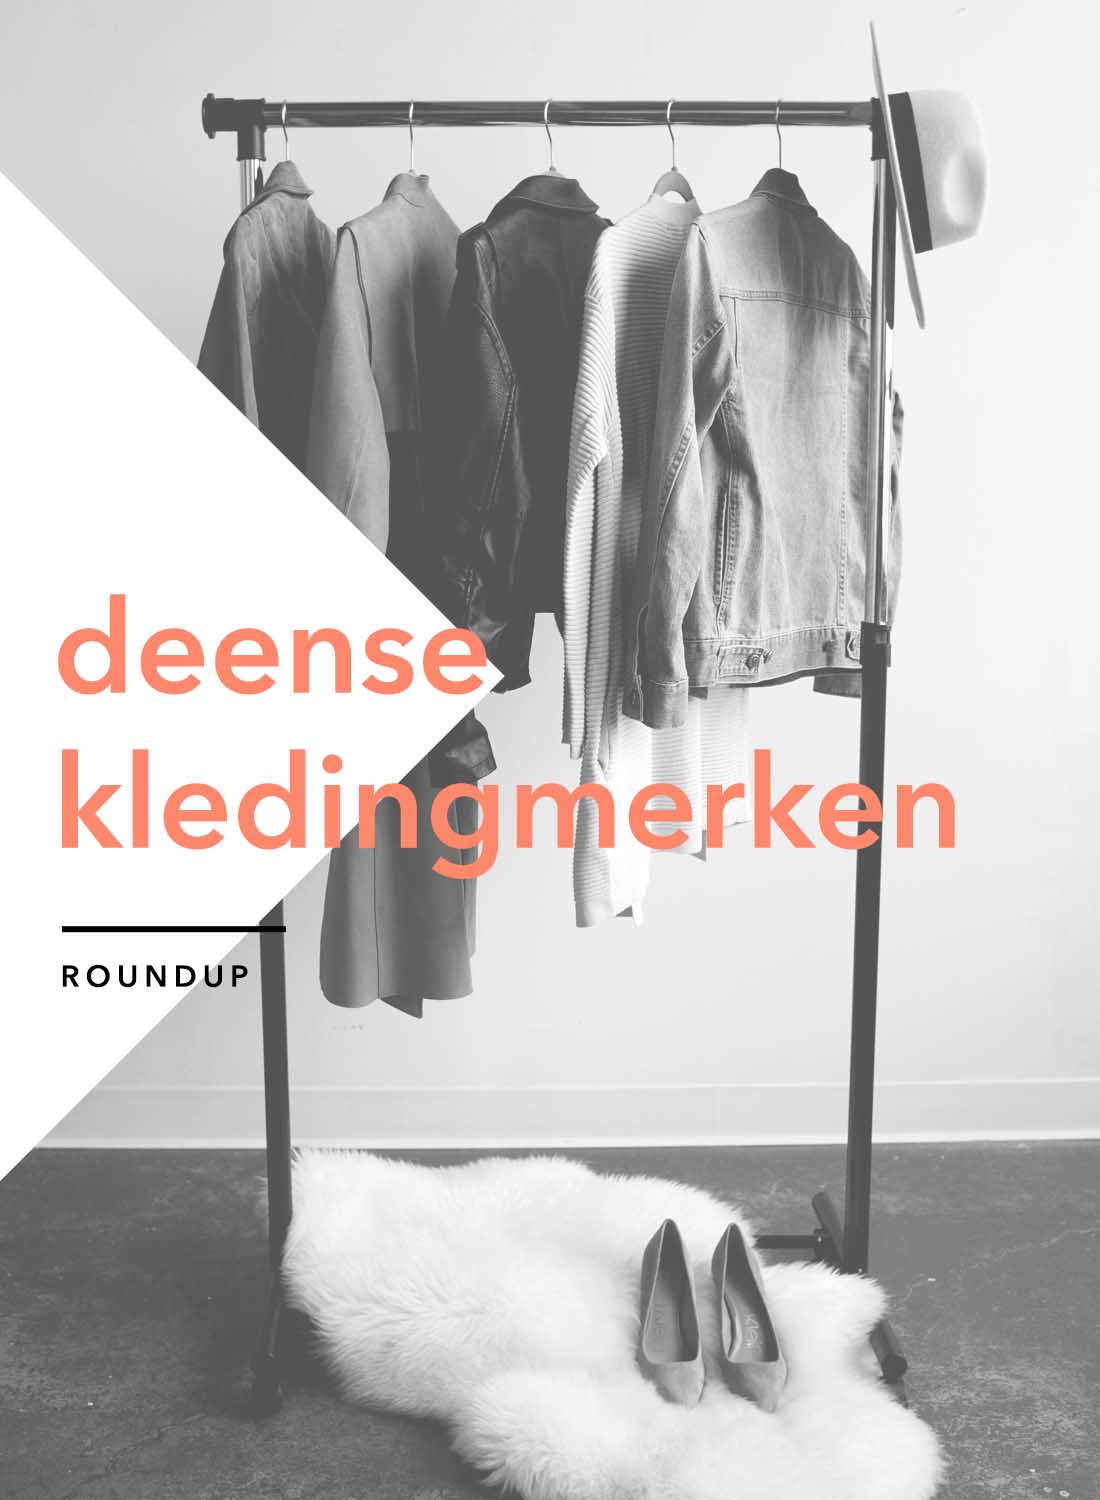 Belegering in de rij gaan staan sponsor Top 10 Deense kleding merken | Mode uit Denemarken en Kopenhagen